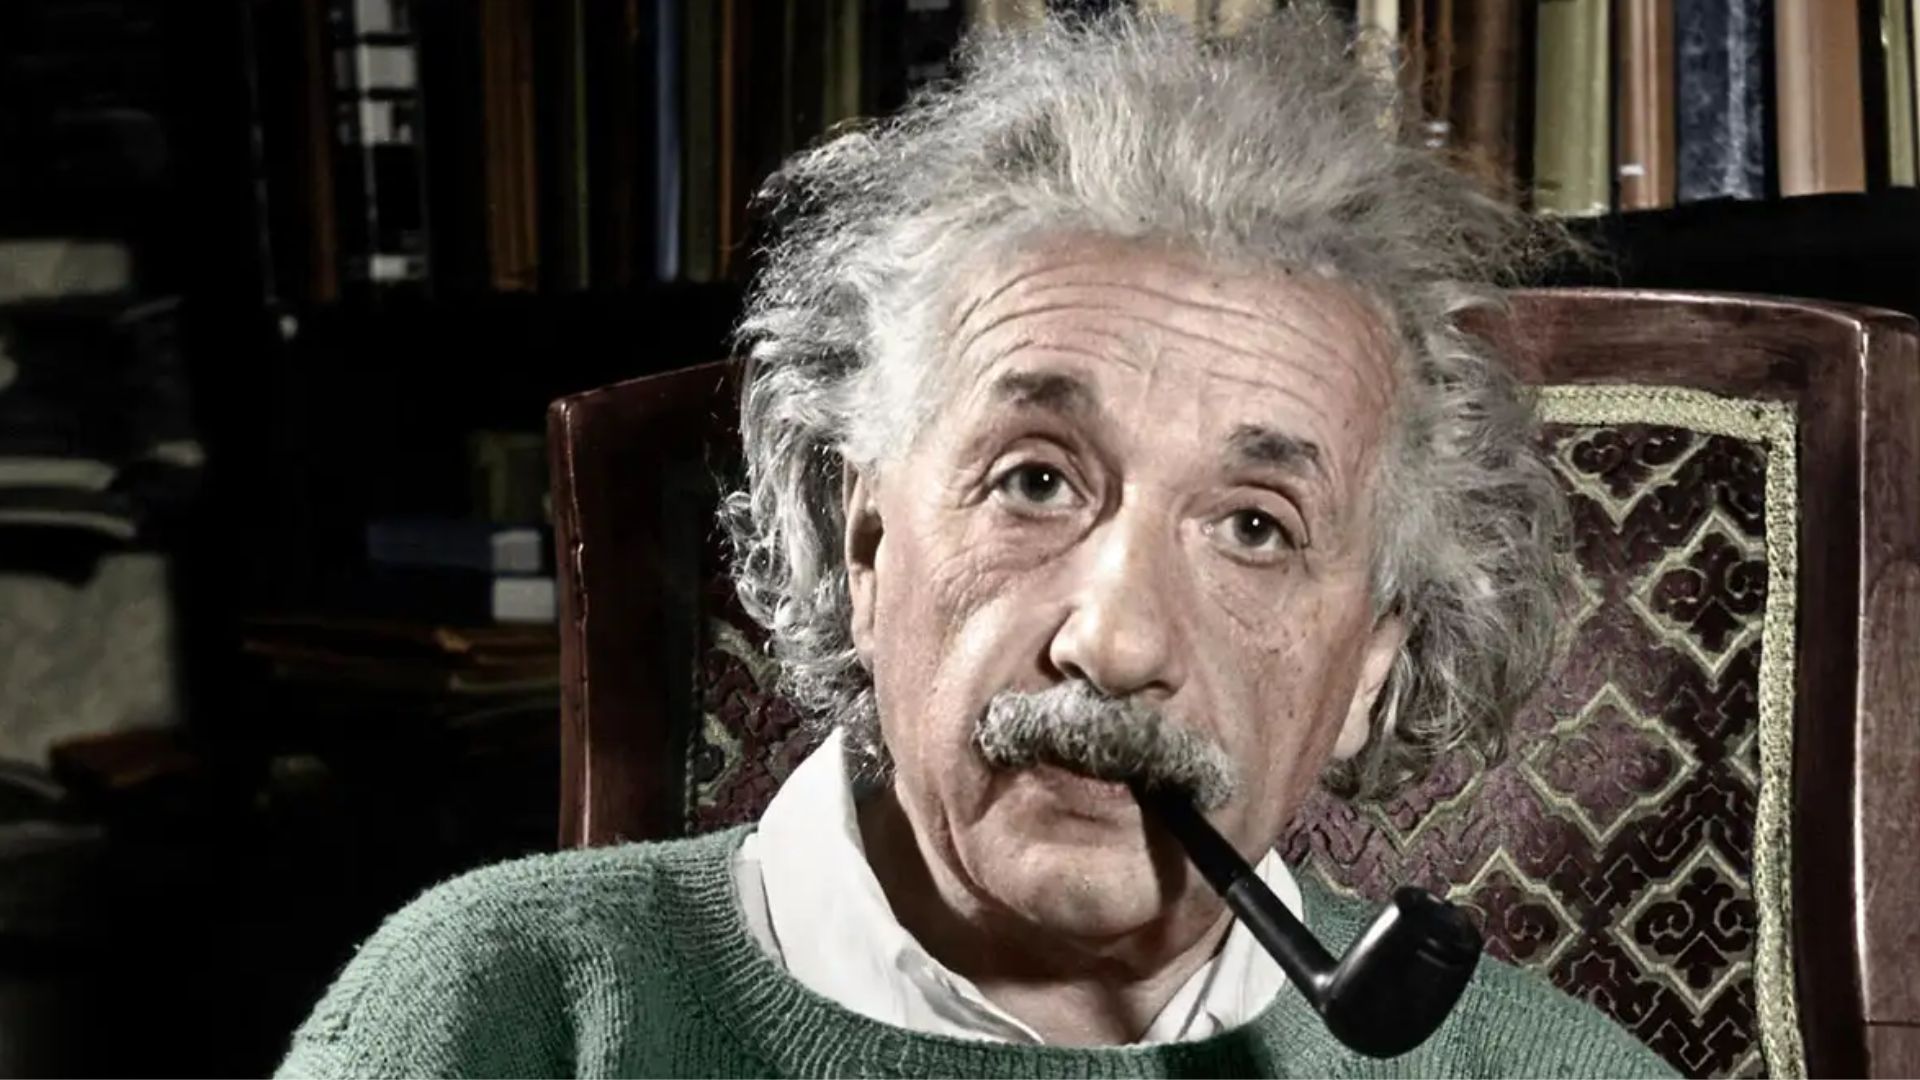 Albert Einstein Smoking